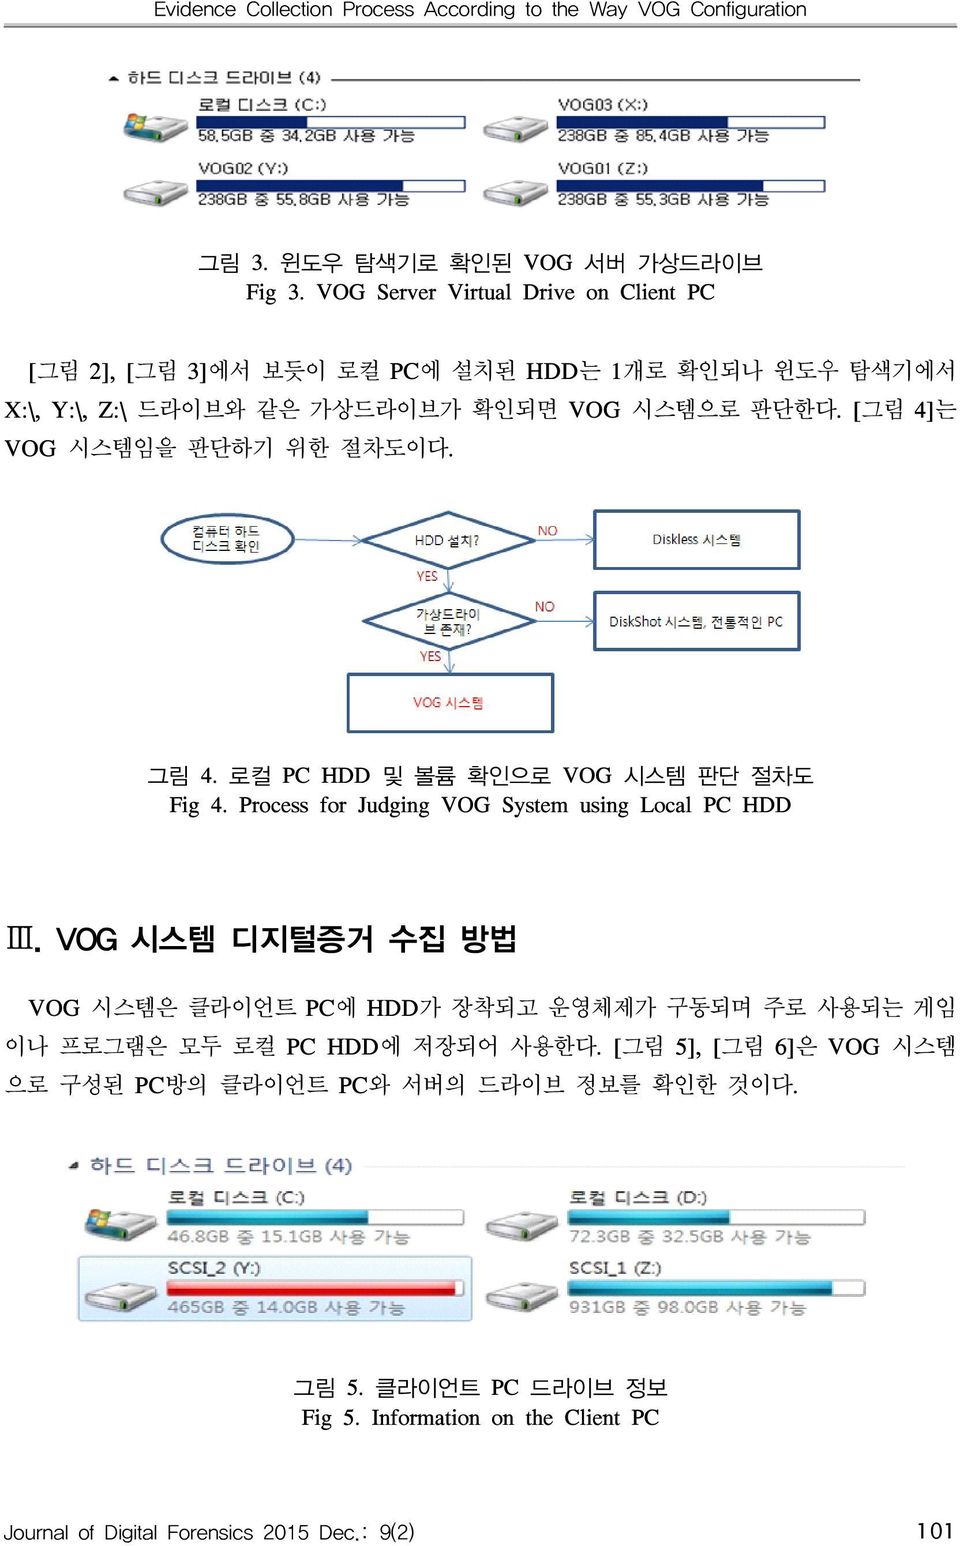 [그림 4]는 VOG 시스템임을 판단하기 위한 절차도이다. 그림 4. 로컬 PC HDD 및 볼륨 확인으로 VOG 시스템 판단 절차도 Fig 4. Process for Judging VOG System using Local PC HDD Ⅲ.